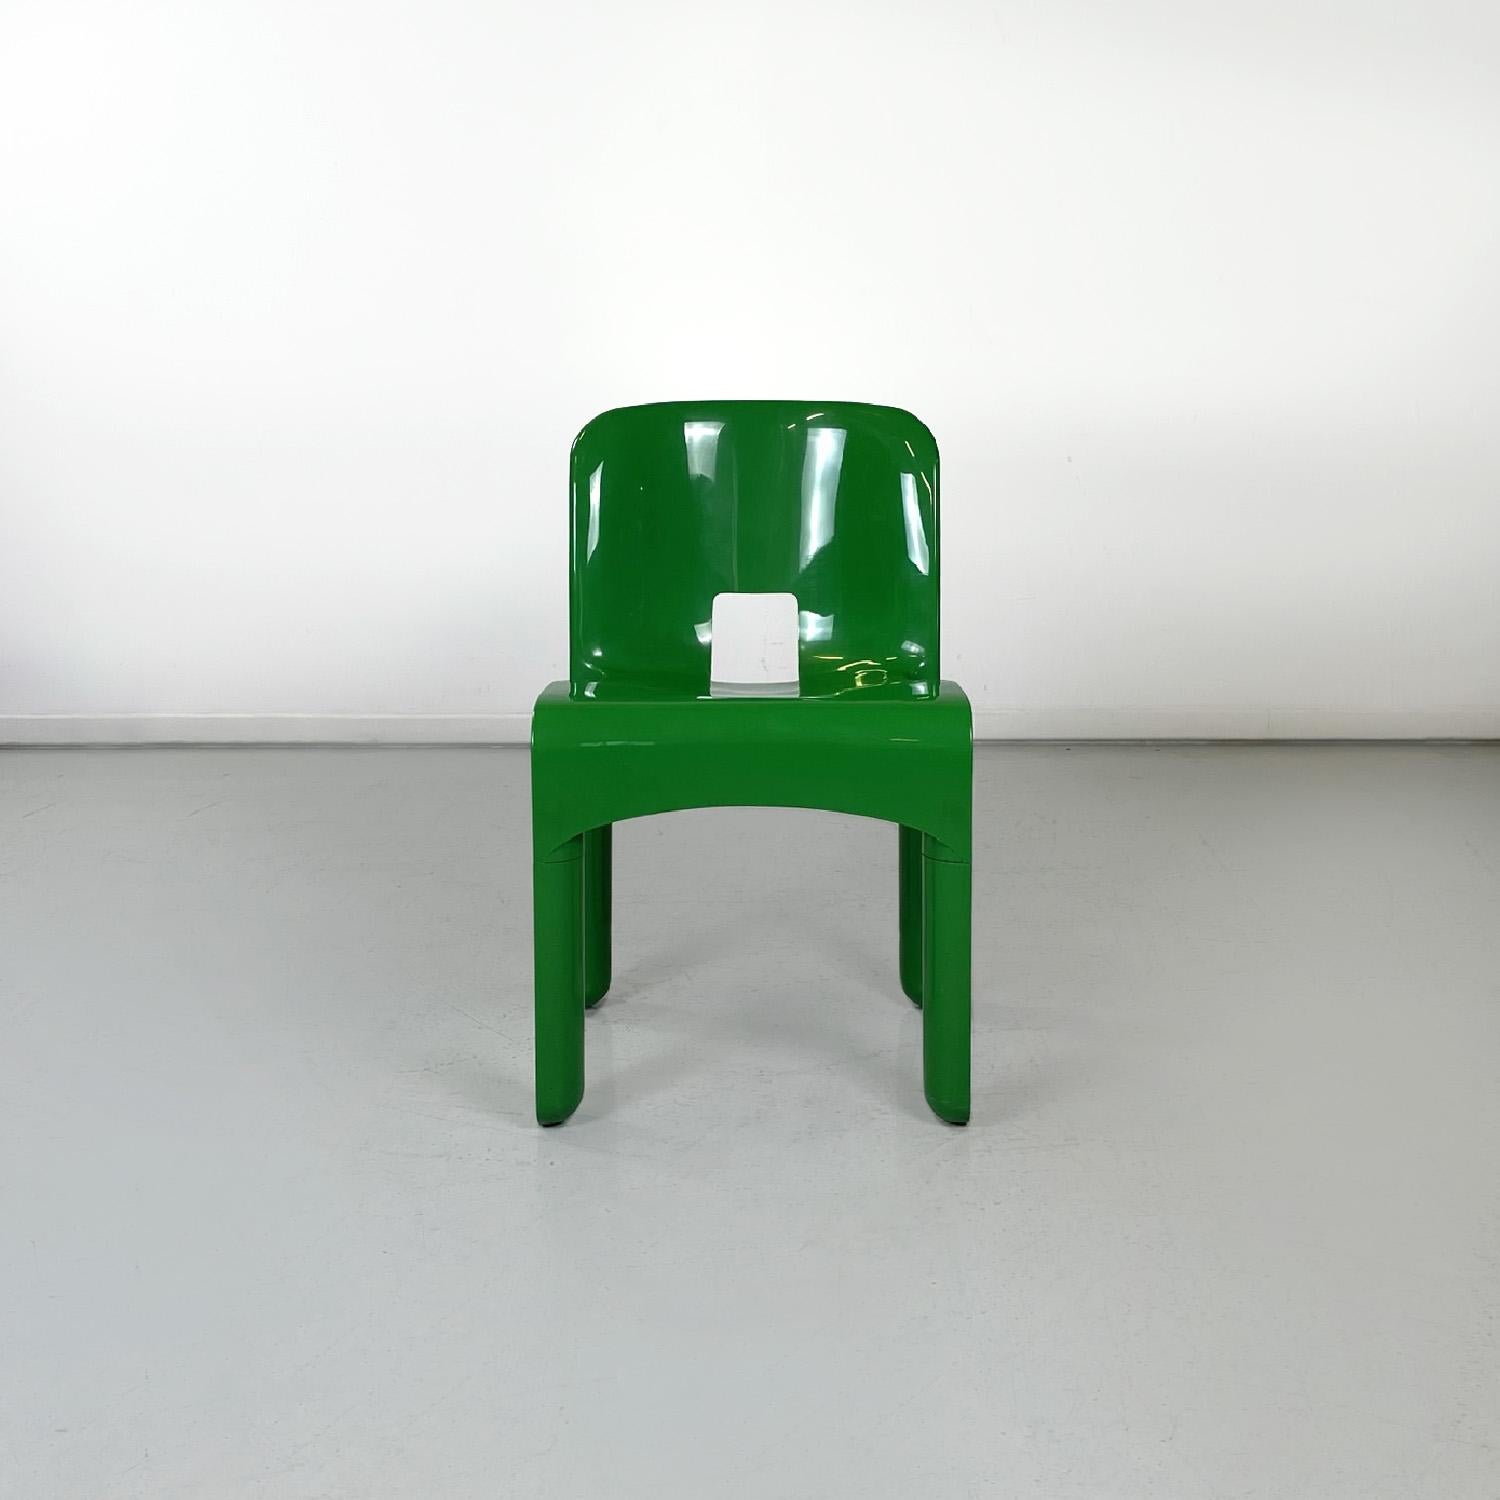 Chaises vertes modernes italiennes 4868 Universal Chair by Joe Colombo Kartell, 1970
Paire de chaises mod. 4868, également connues sous le nom de Sedia Universale, en plastique ABS vert brillant. Le dossier, légèrement incurvé, est rectangulaire